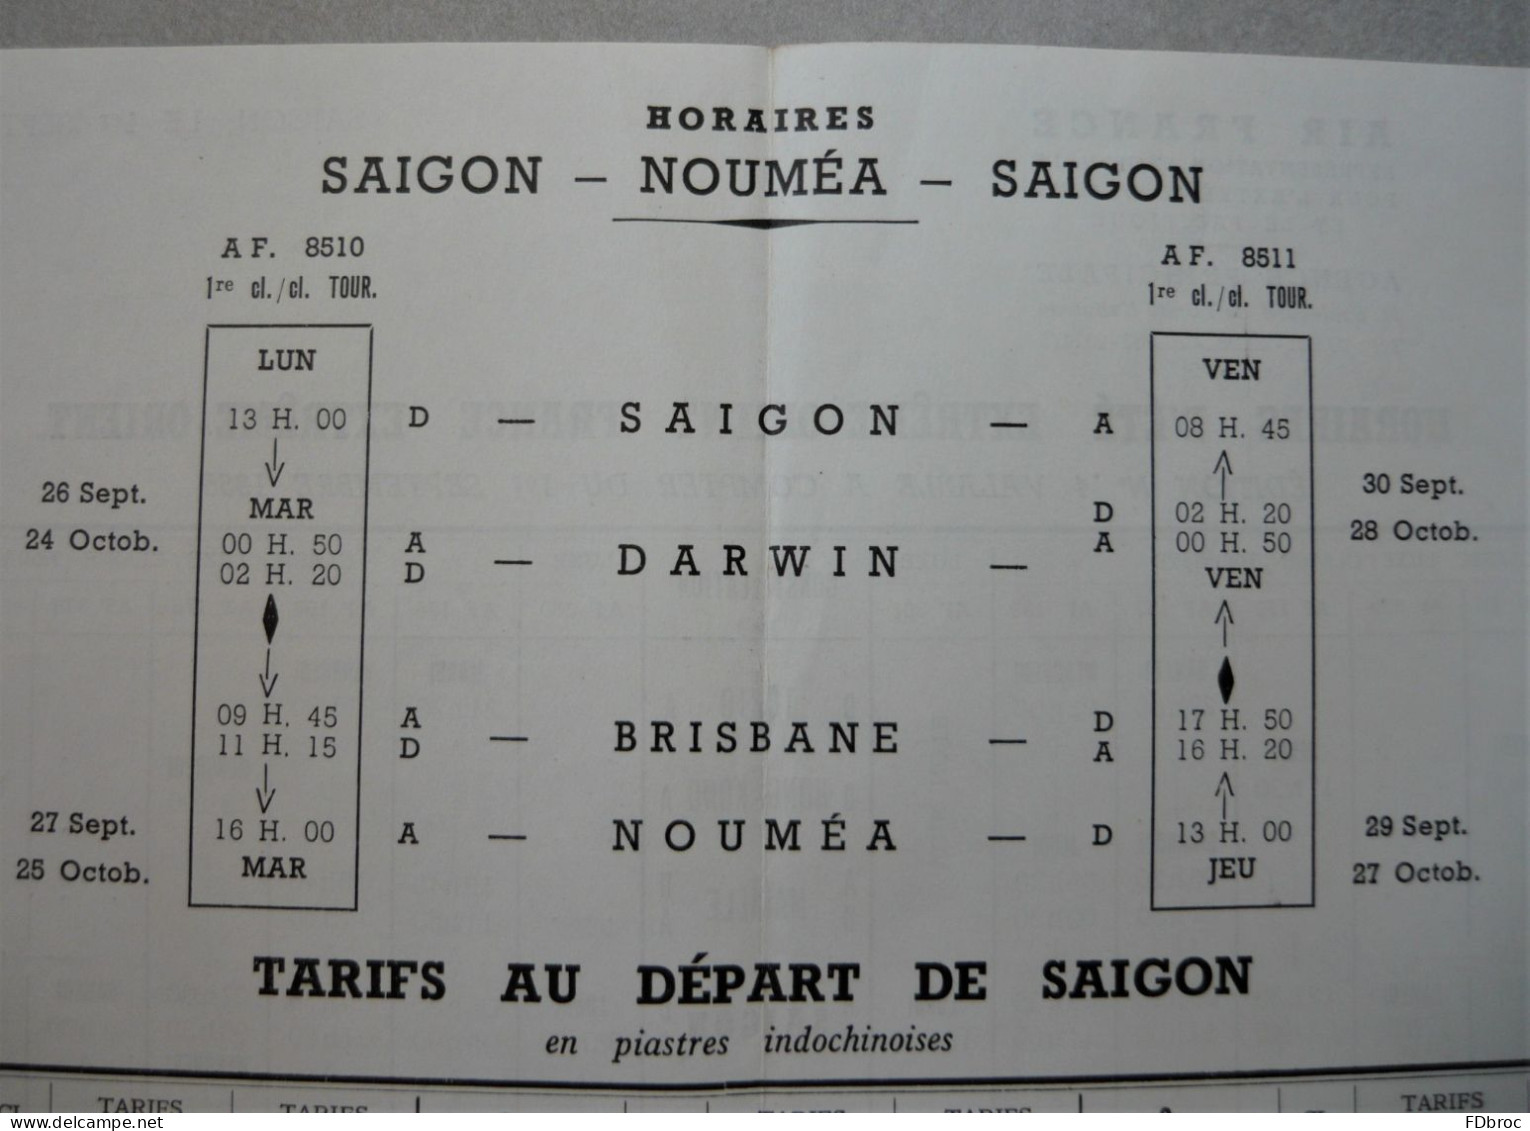 Ancien Dépliant Horaire (Time Table) Tarif AIR FRANCE Indicateur AVION SAIGON NOUMEA Extrême Orient Vietnam 1955 - Timetables